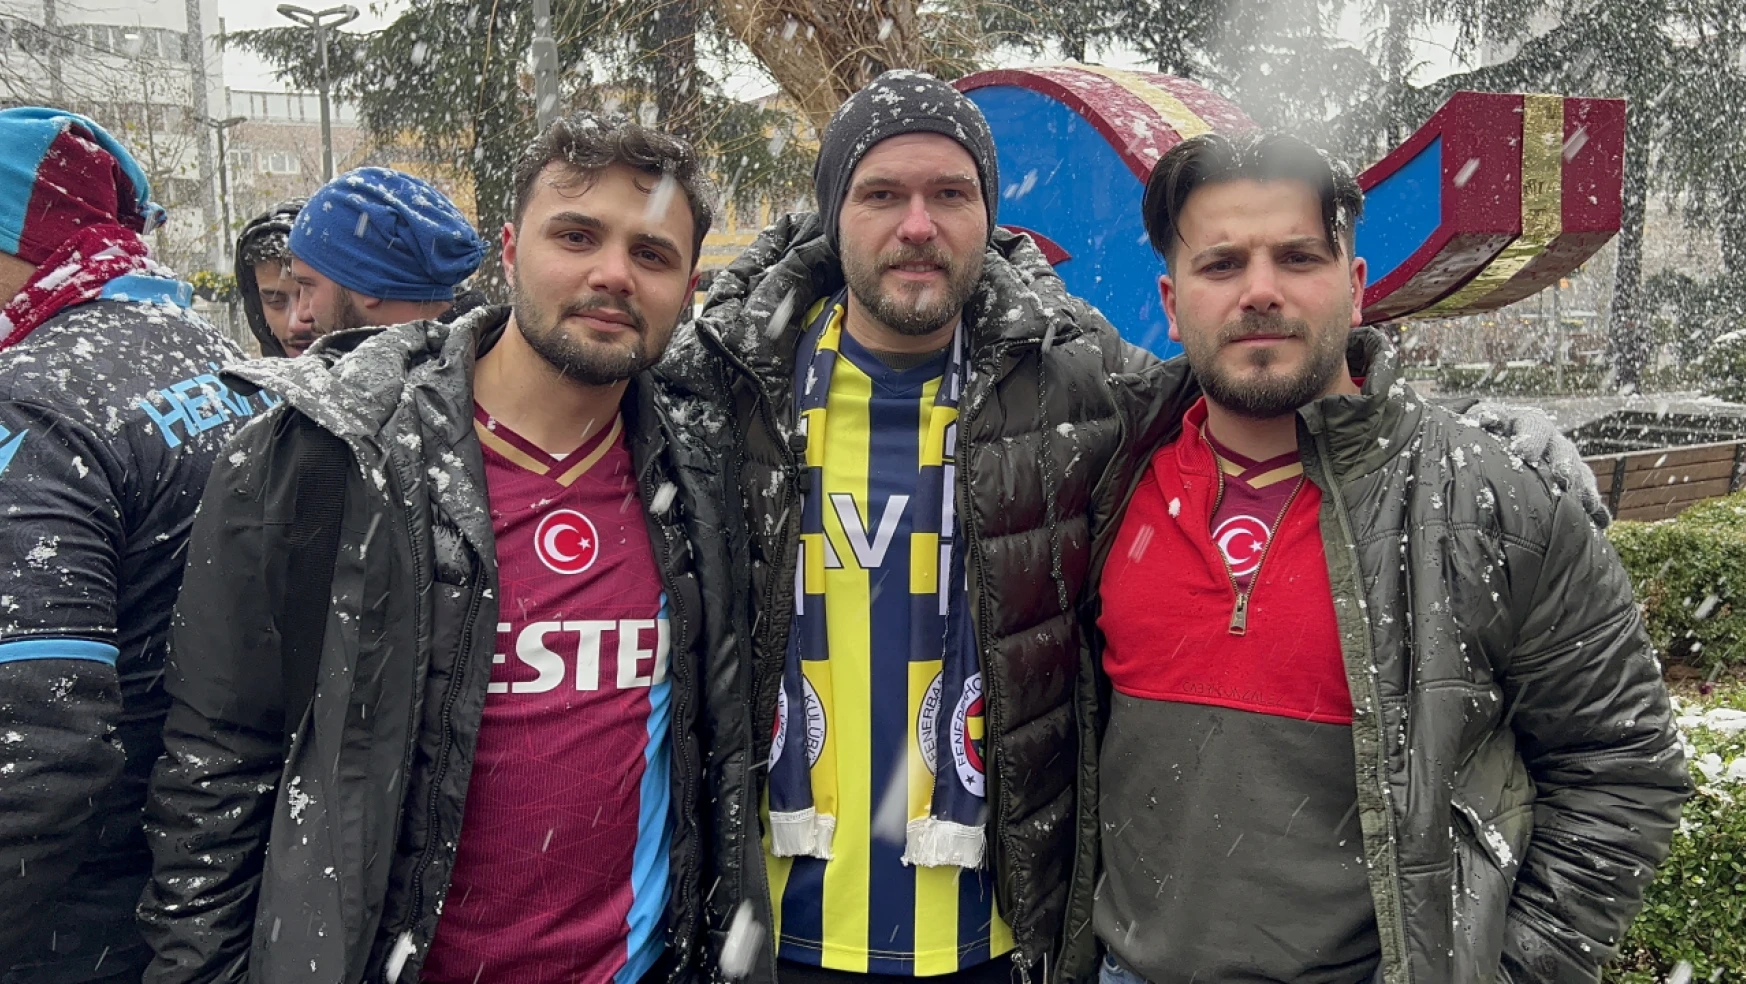 Trabzon'da ebedi dostluk